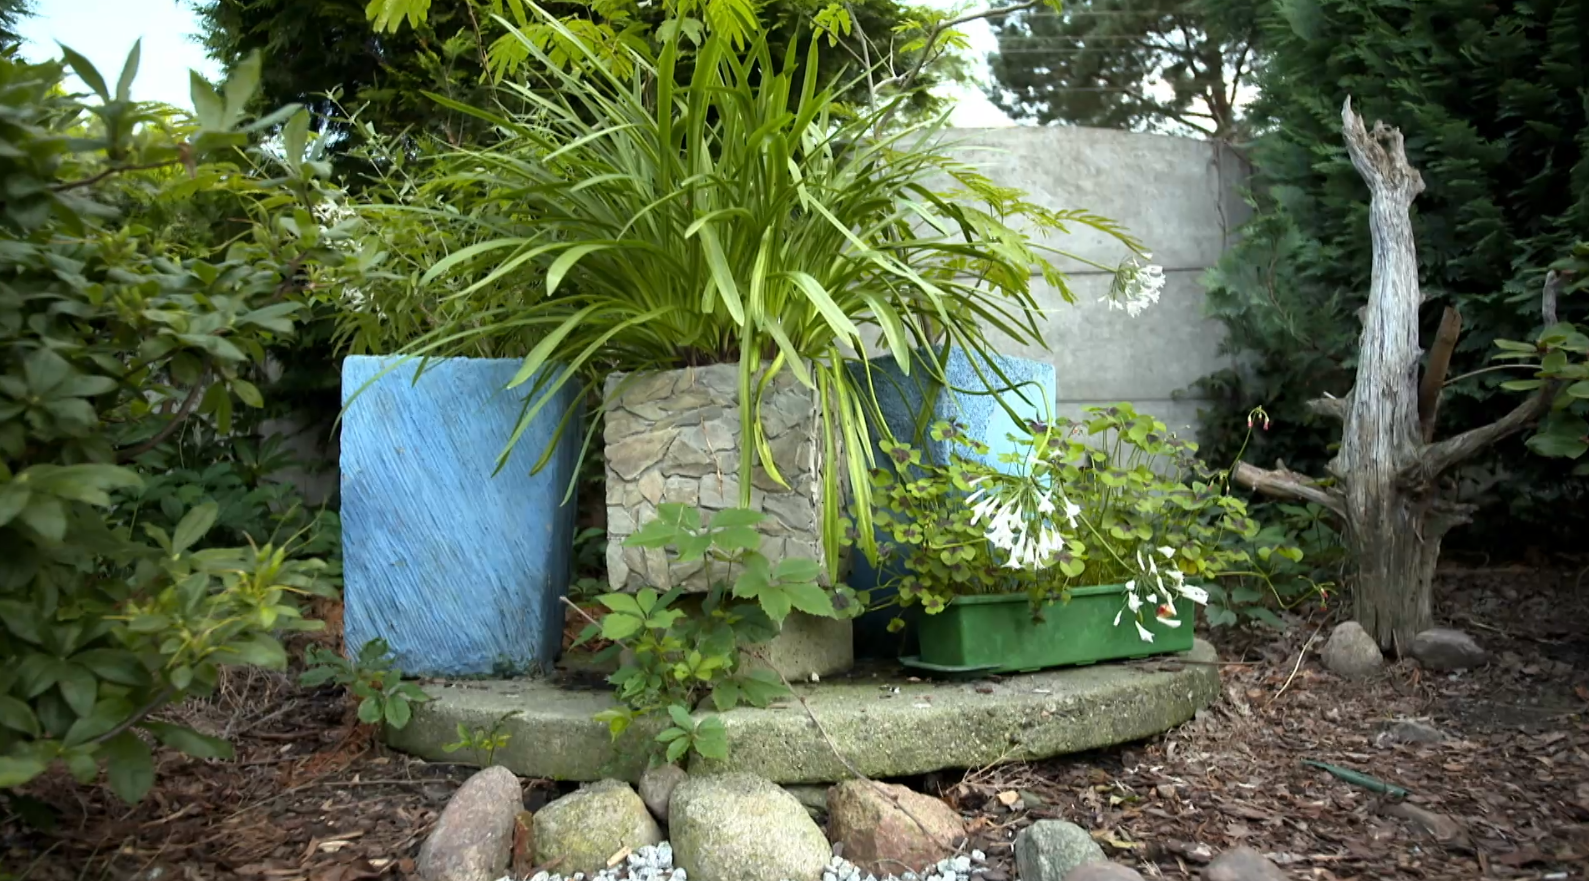 "Nowa Maja w ogrodzie": donice ogrodowe DIY. Stwórz dekoracyjne donice wykorzystując styropian i materiały